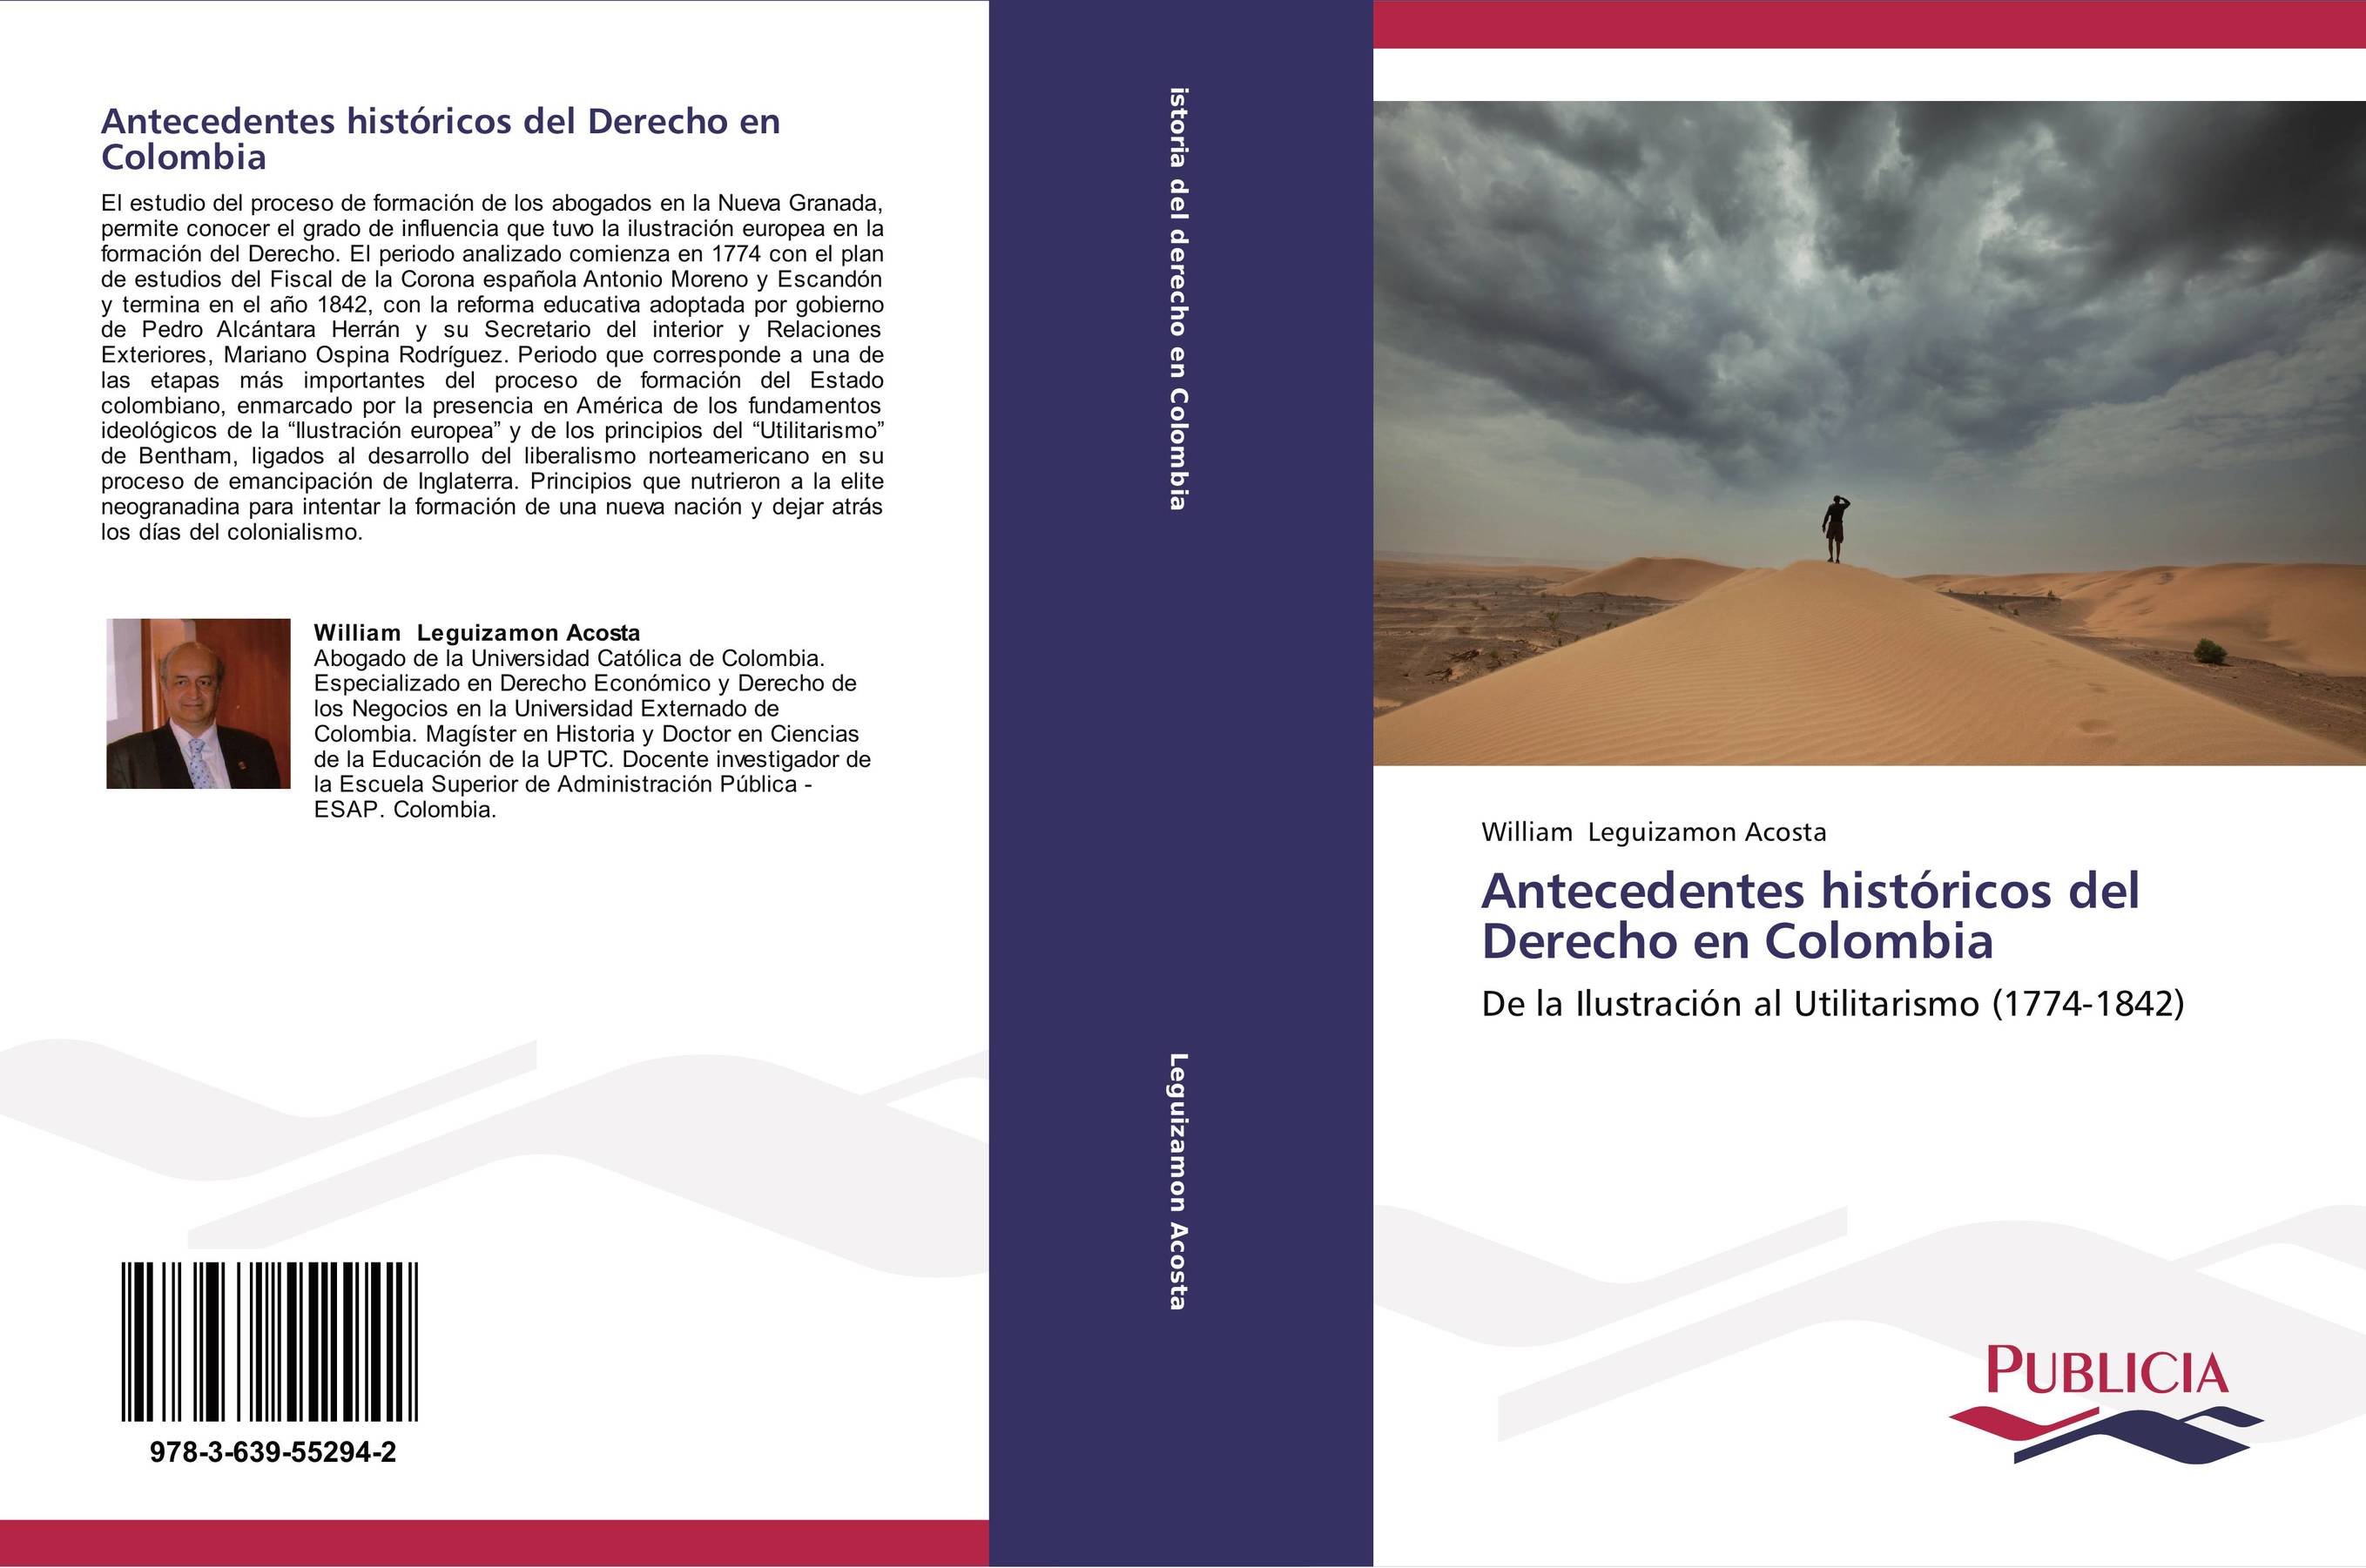 Antecedentes históricos del Derecho en Colombia